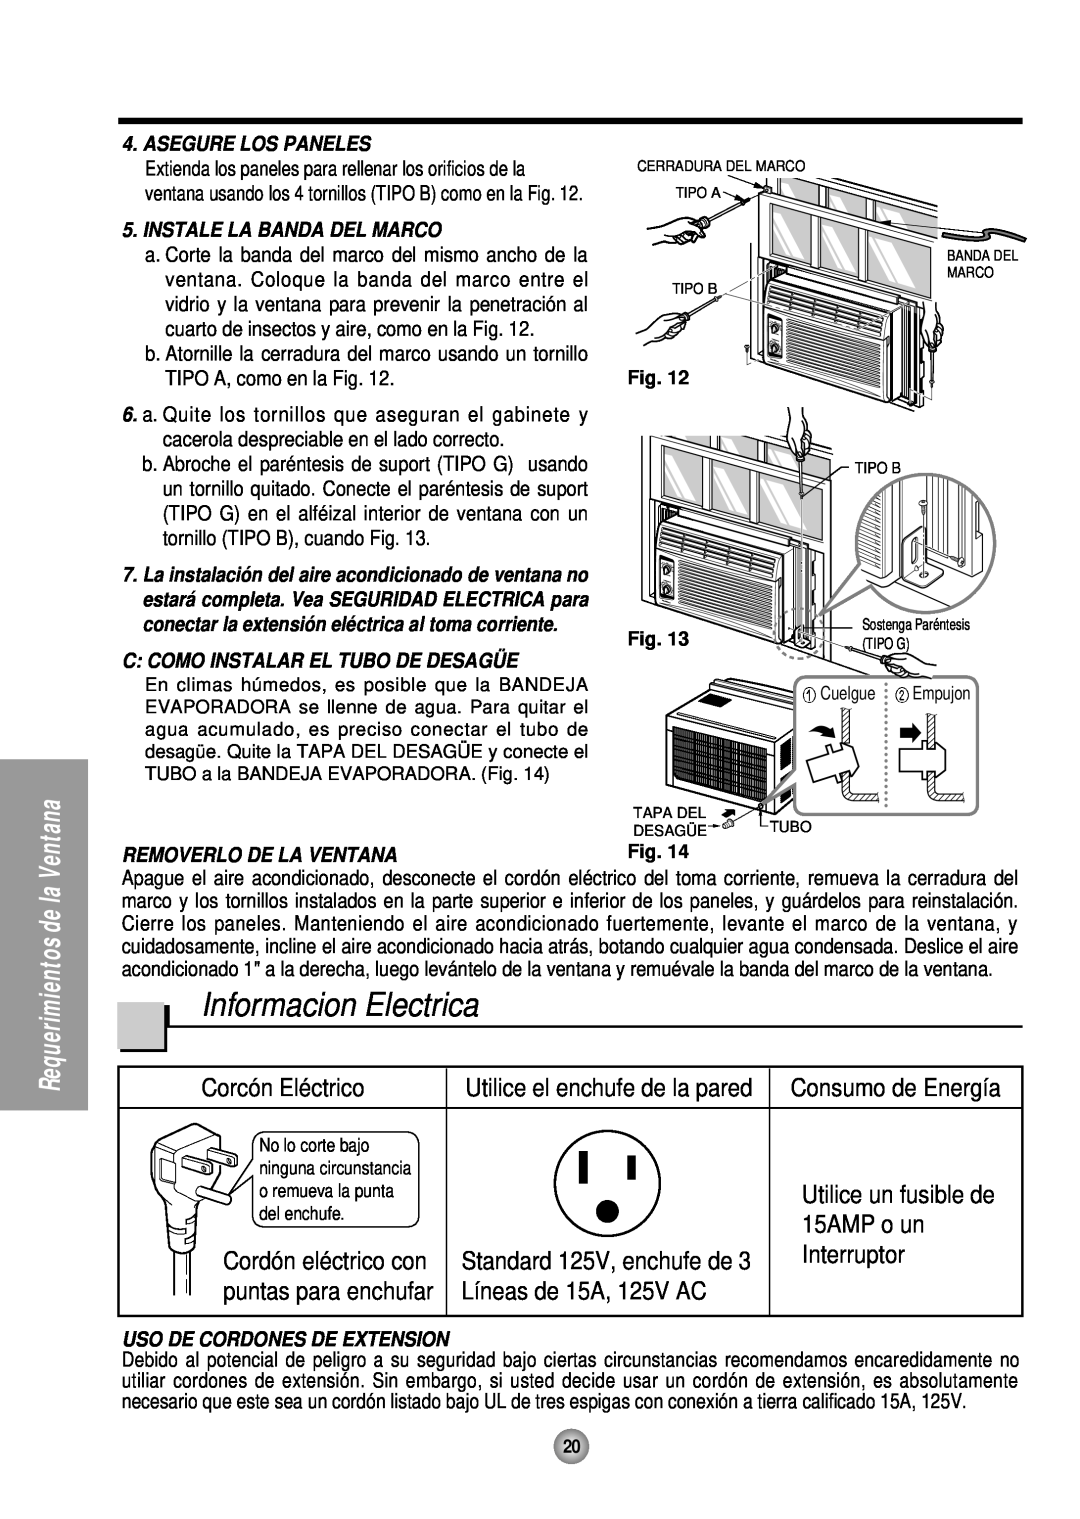 Panasonic HQ-2051TH manual Informacion Electrica, Corcón Eléctrico, Utilice el enchufe de la pared, 15AMP o un, Interruptor 